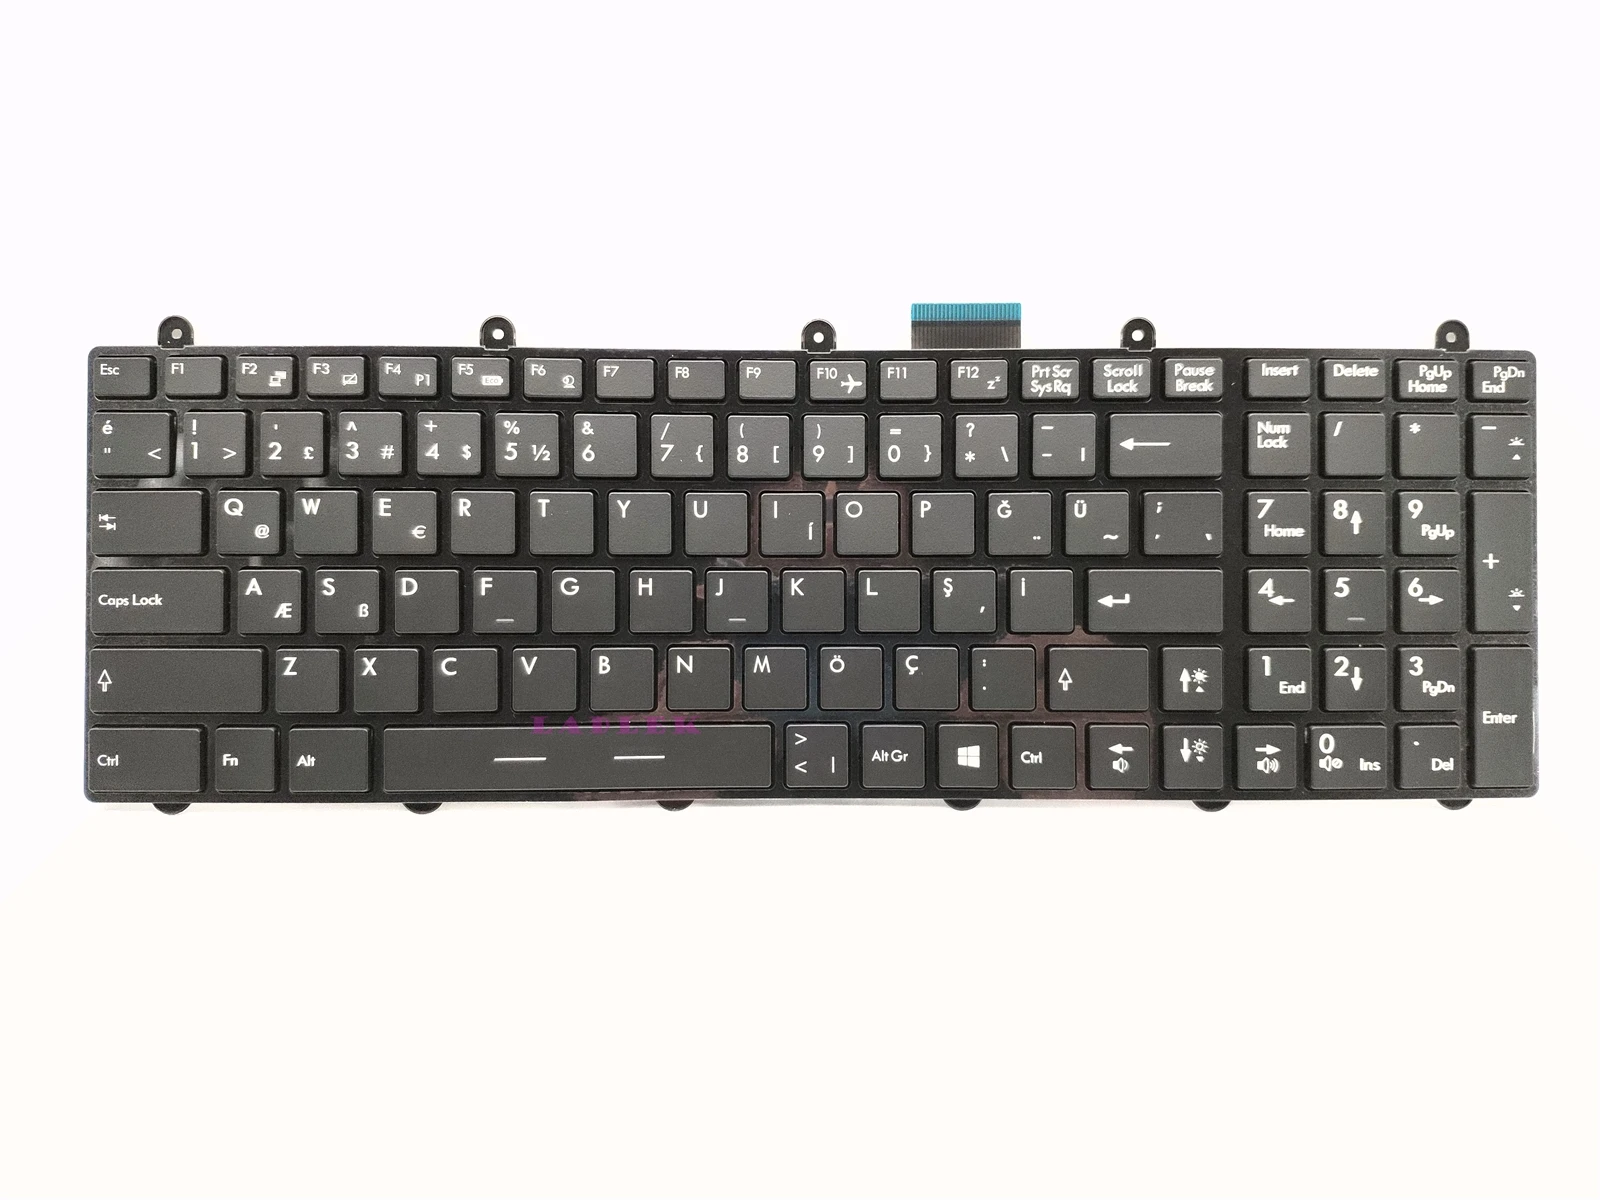 Turkish Klavye Full RGB Clolrful backlit keyboard for MSI GT60/GT70